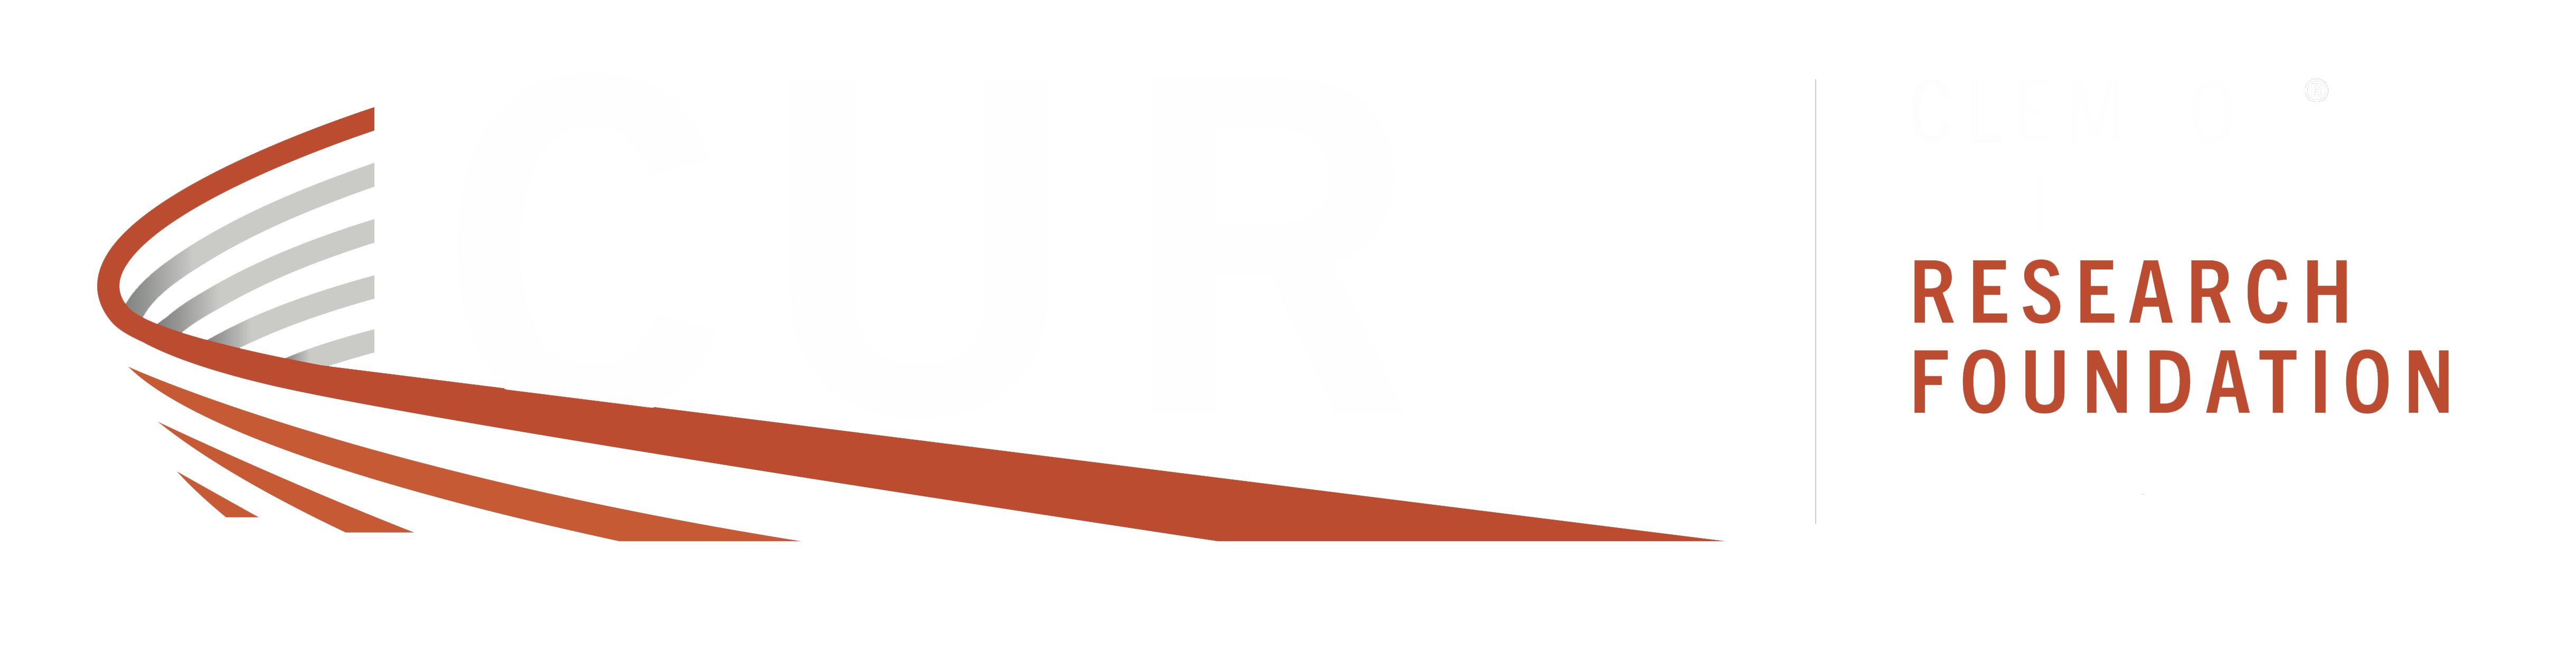 CURF logo